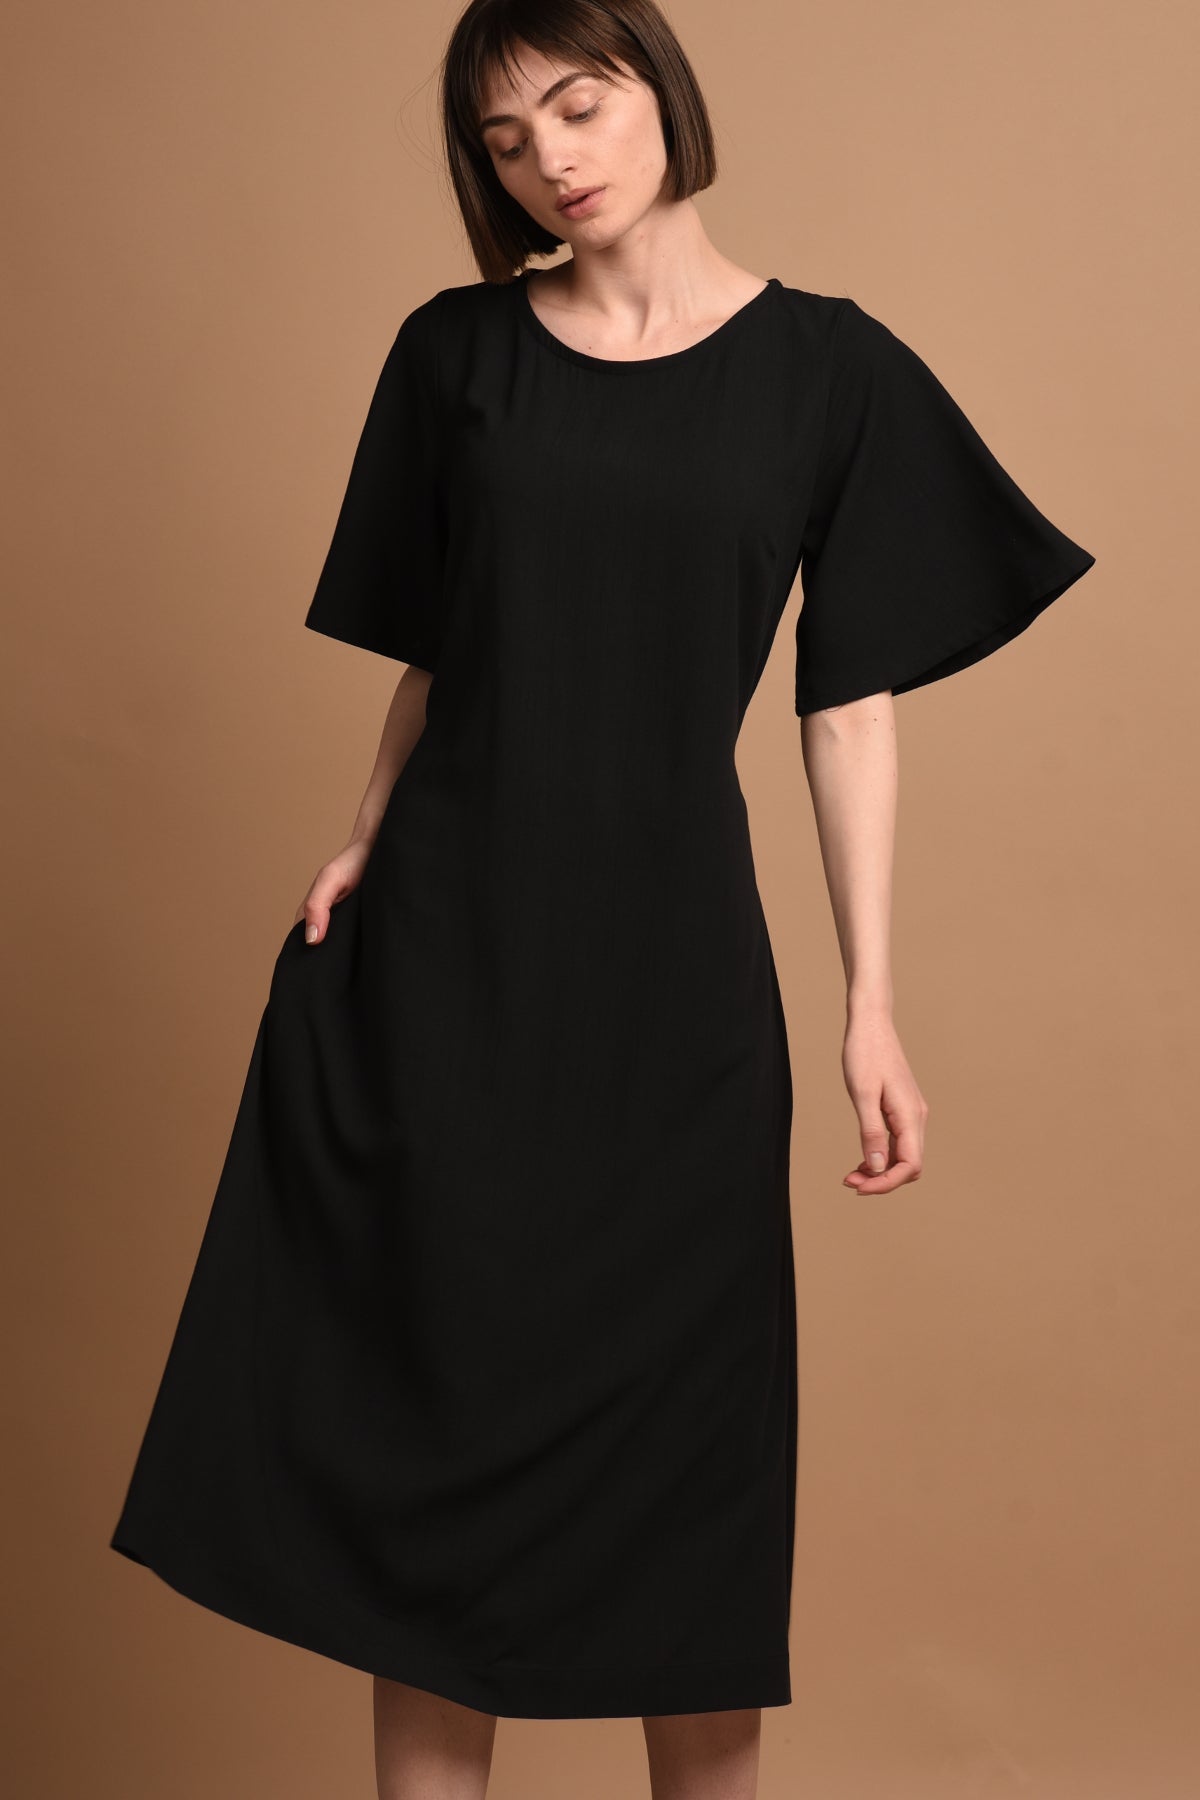 Black dress Nika made of 100% viscose by Ayani